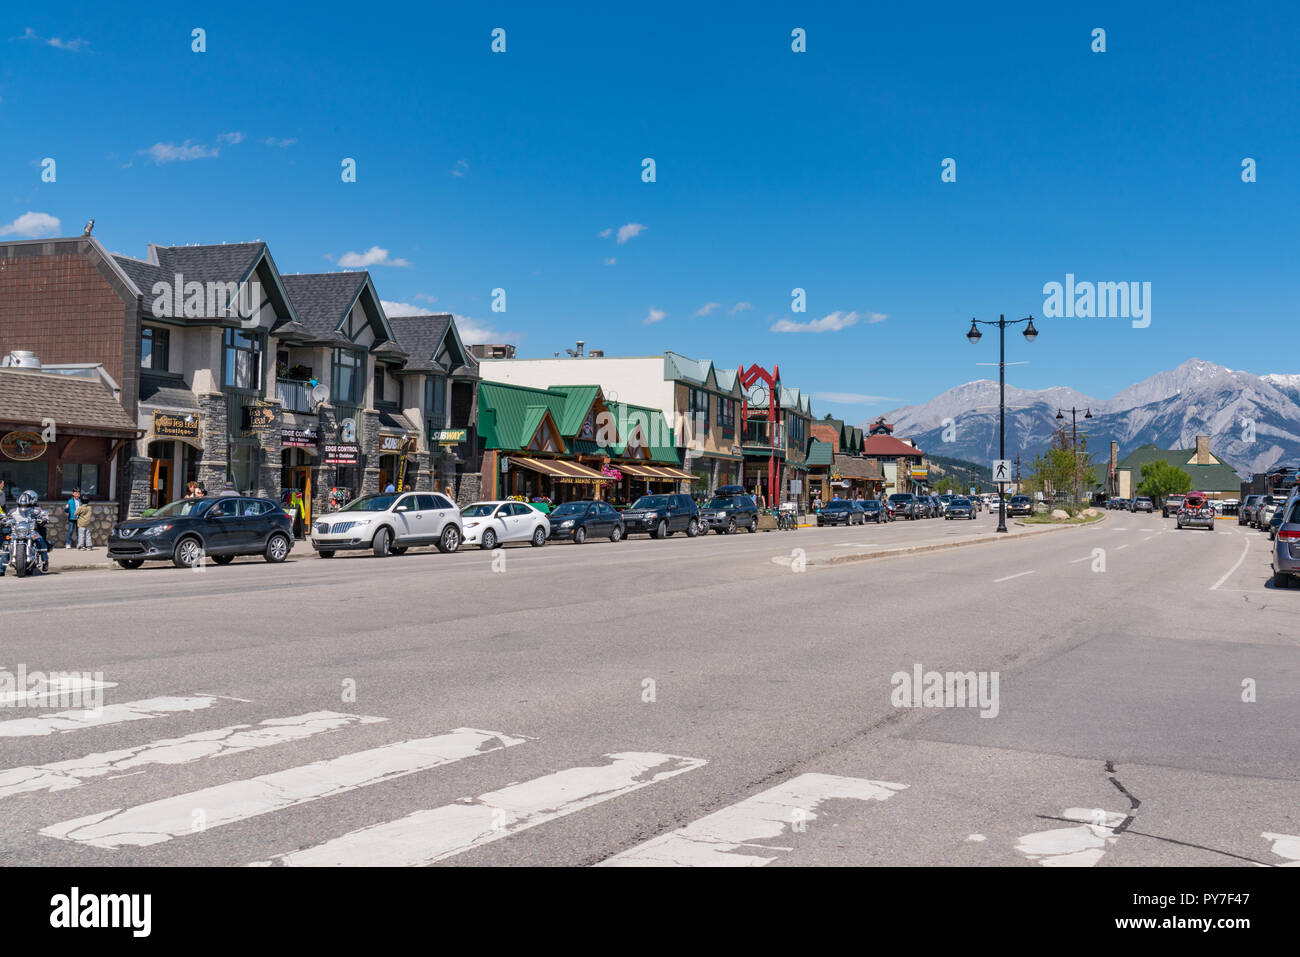 JASPER, Kanada - 5. JULI 2018: die Geschäfte in der Stadt von Jasper, Alberta entlang Connaught Drive. Stockfoto